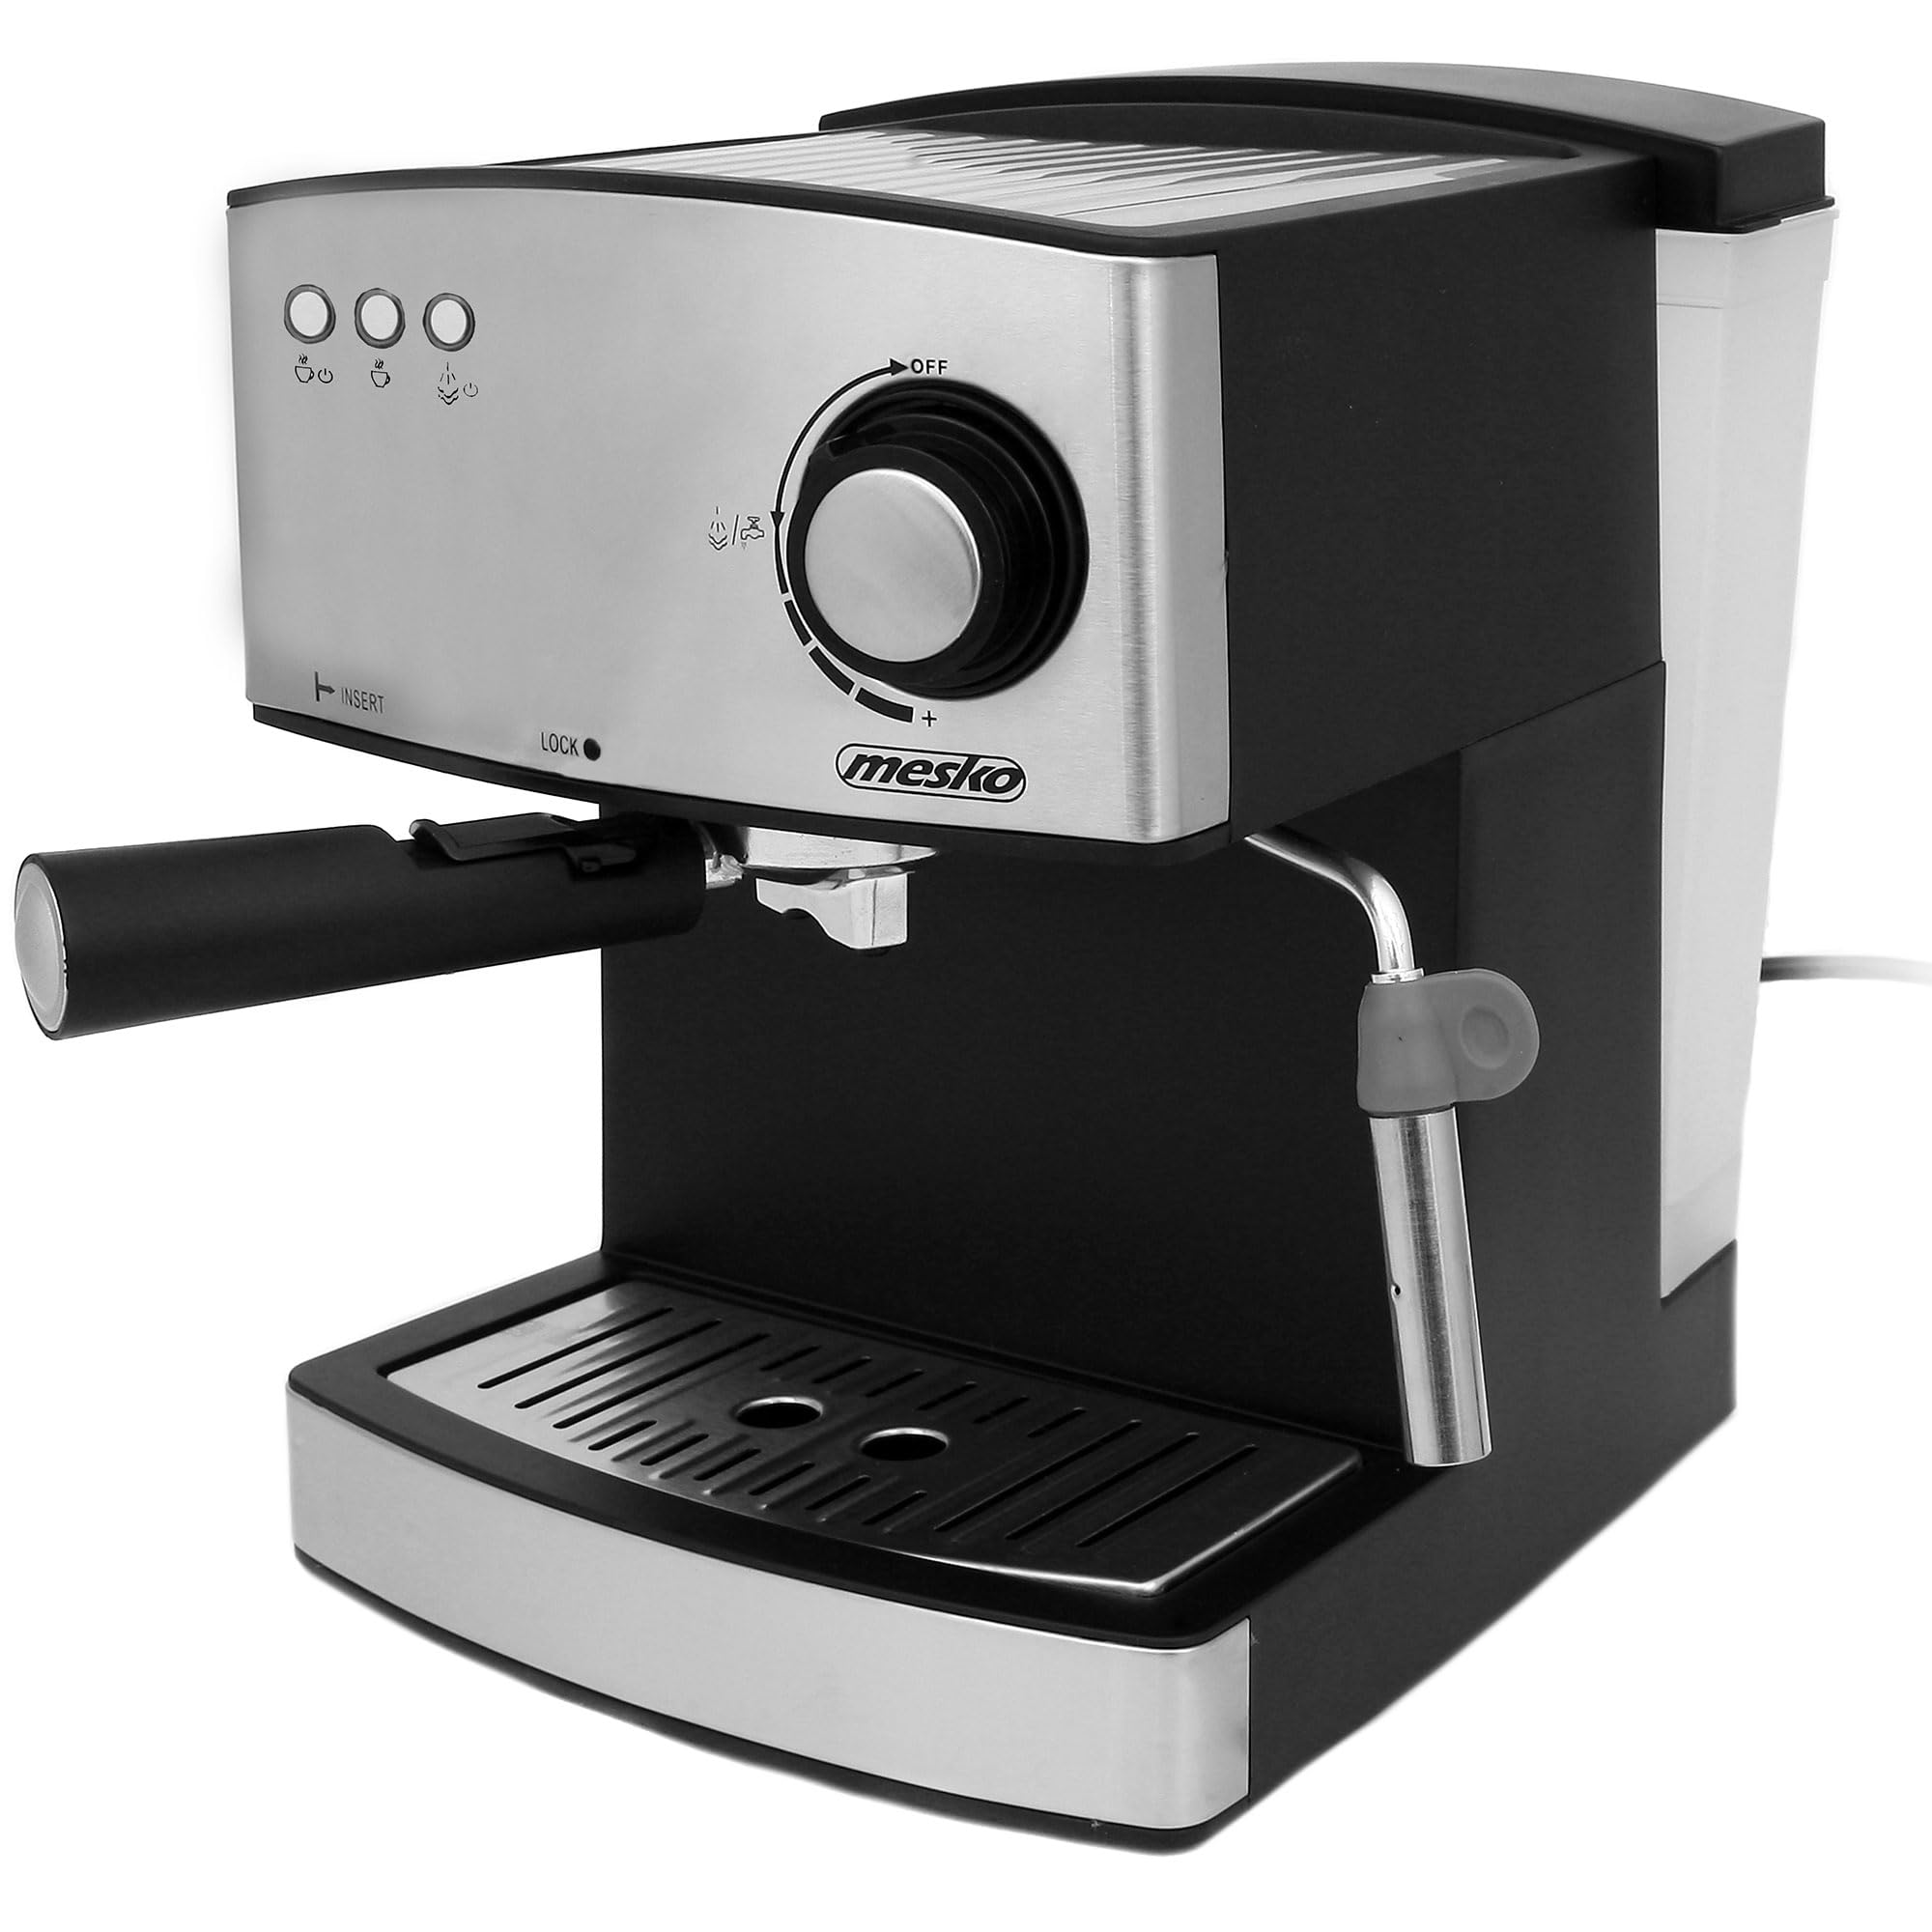 Mesko MS4403 Kaffeemaschine Espresso, Siebträgermaschine 15 Bar, Espressomaschine Klein für Kaffee Cappuccino und Latte, Milchaufschäumer, Tassenwärmer, Edelstahl-Ausführung, 1,6L Wassertank, 850 W